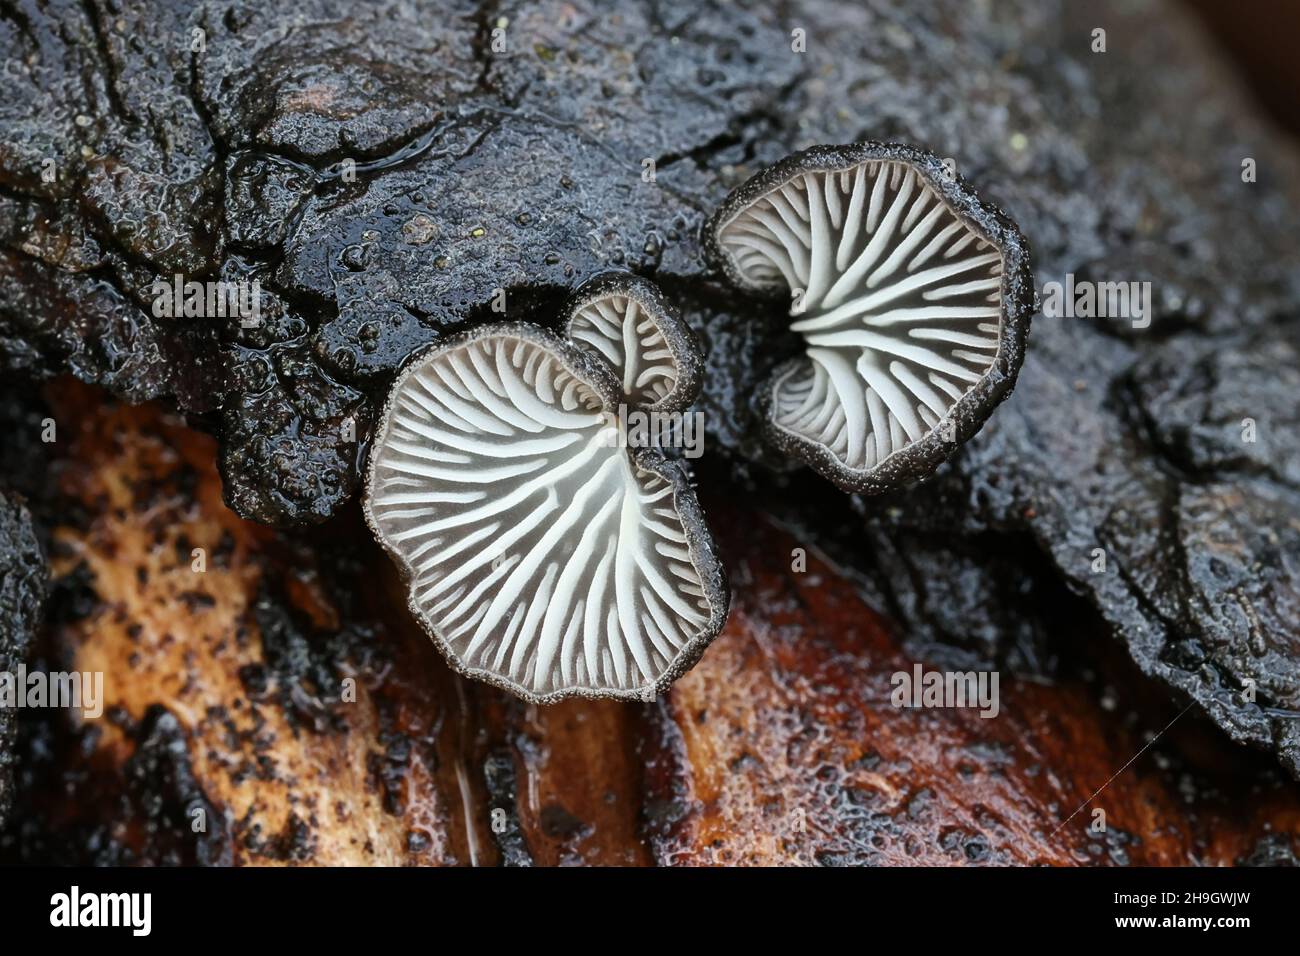 Hohenbuehelia atroerulea, un hongo de ostras diminutas de Finlandia, no tiene un nombre común en inglés Foto de stock